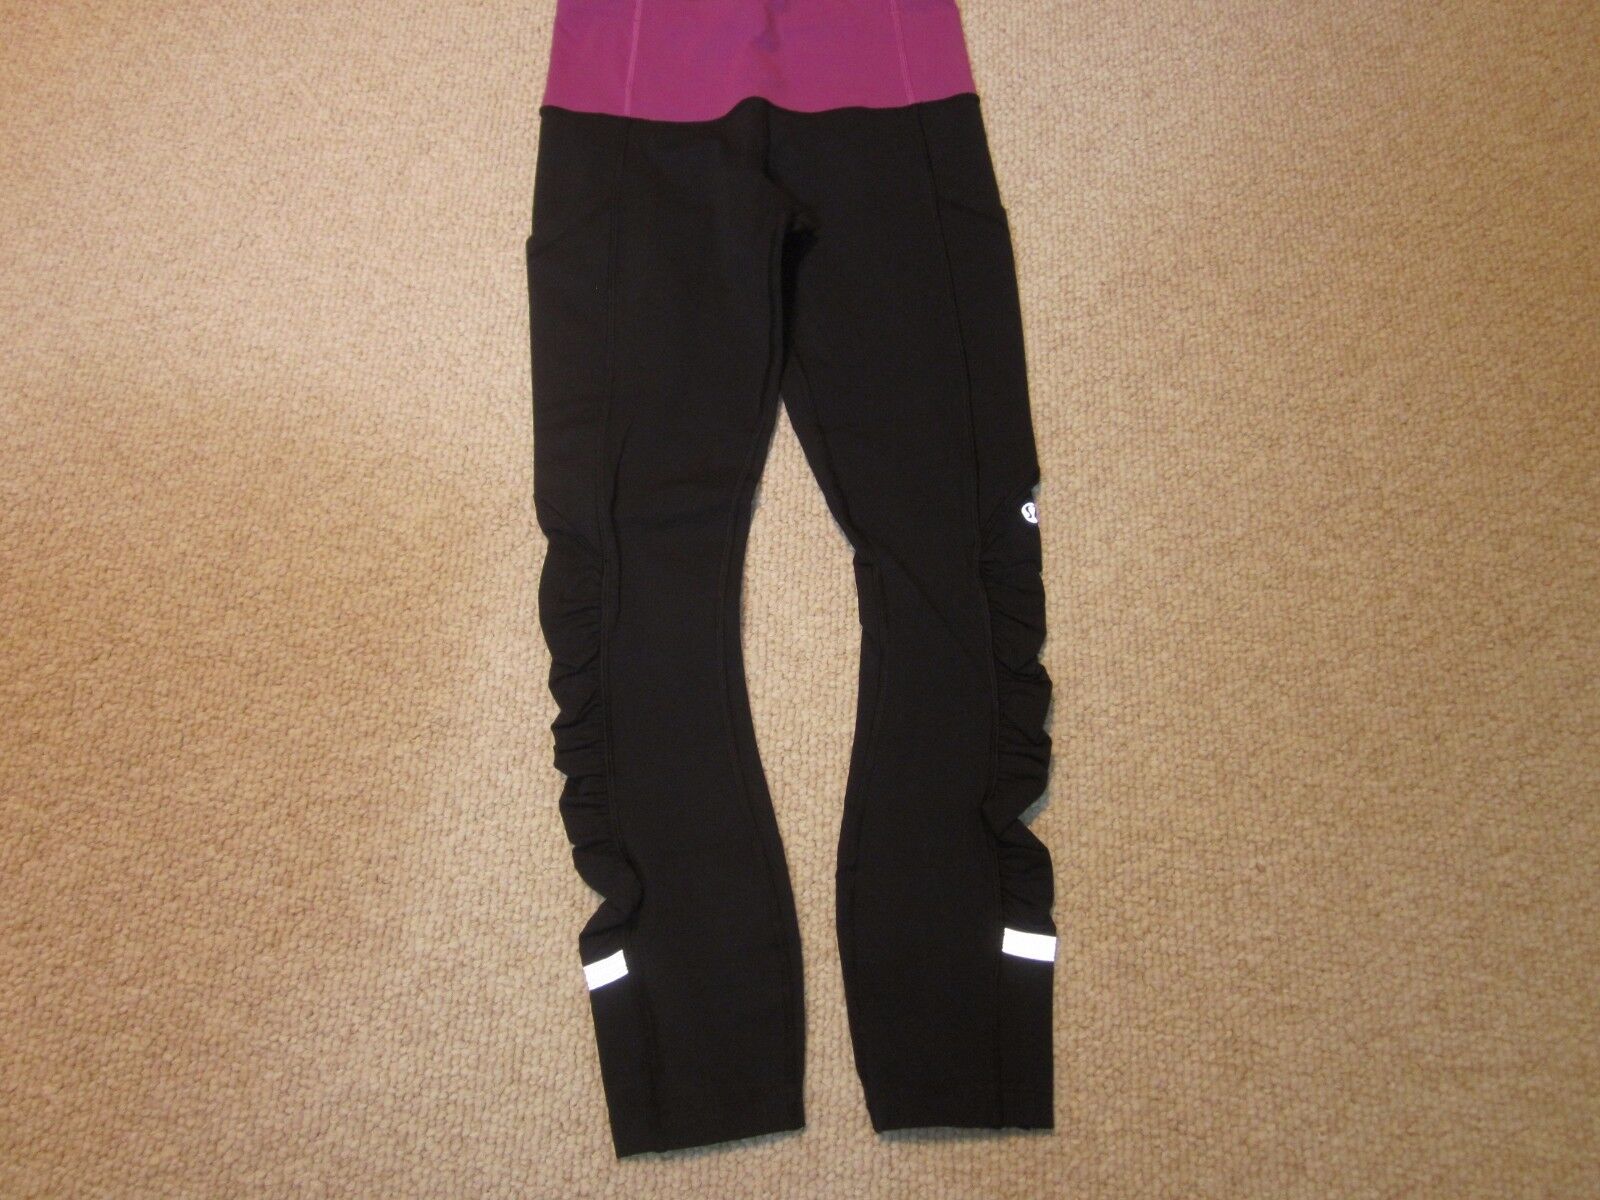 Lululemon Yoga Pants Size 4 Black - image 4